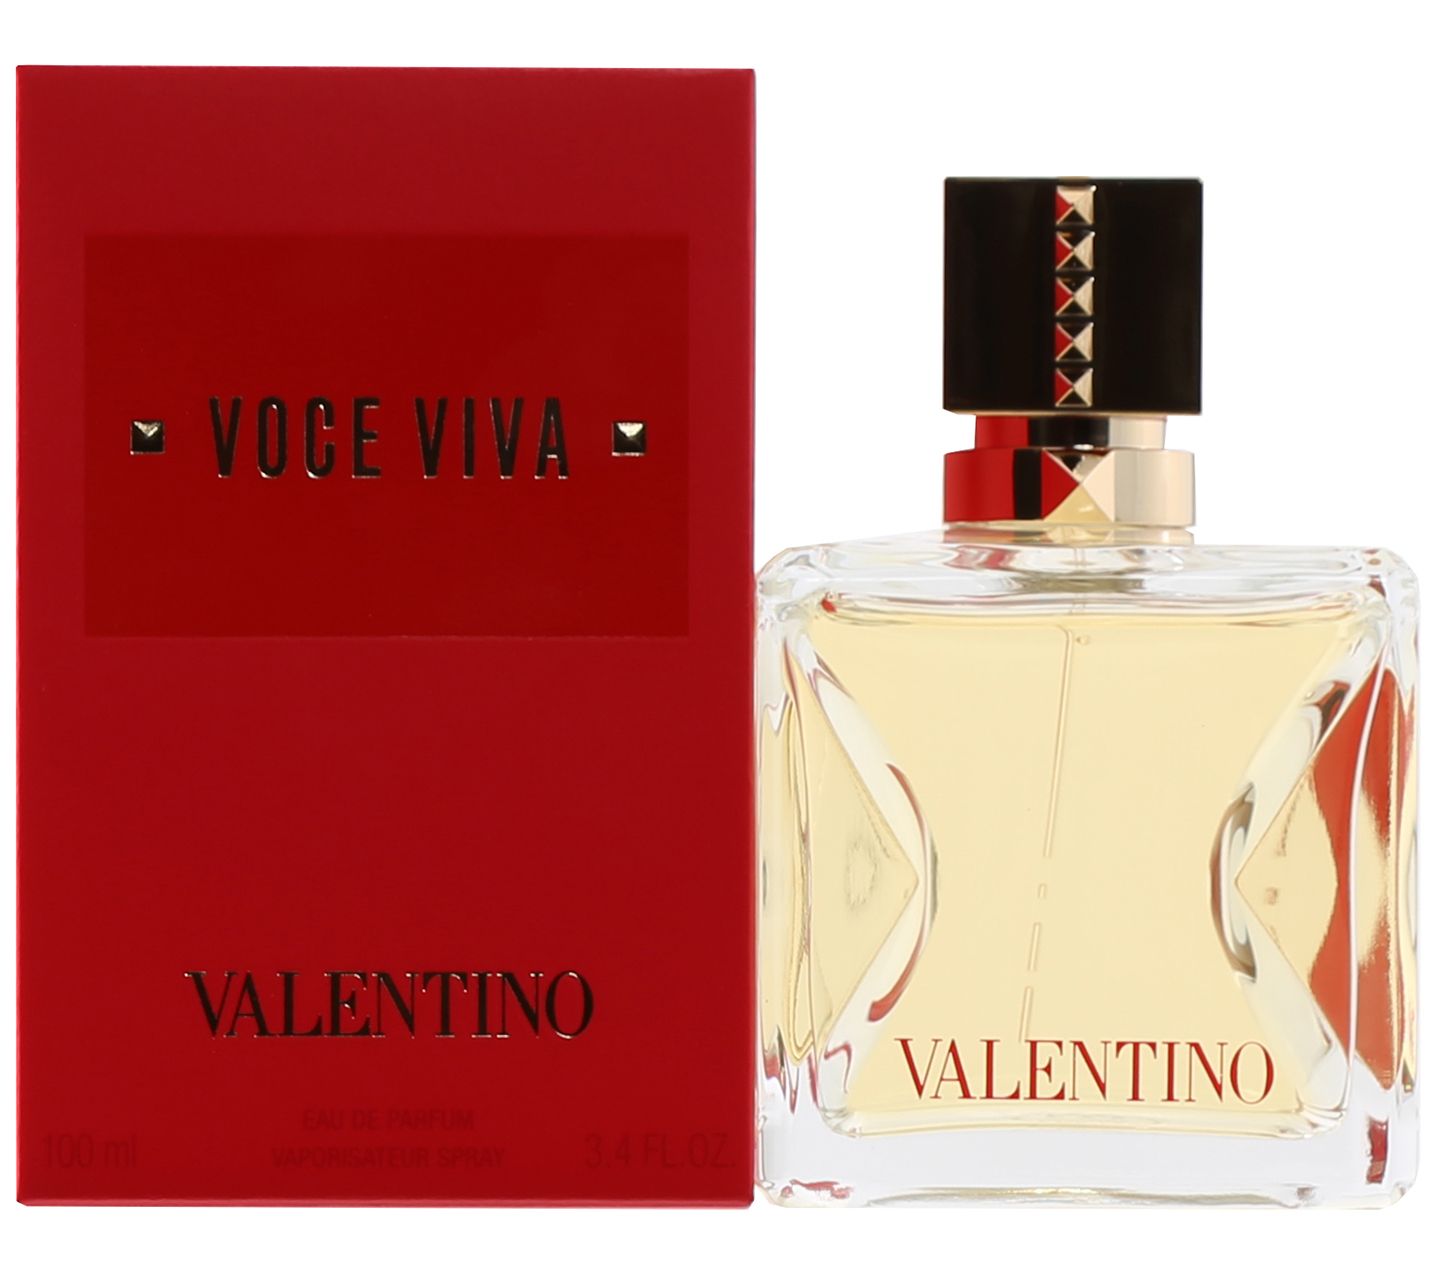 Voce Viva Intensa for Women by Valentino Eau de Parfum Spray 0.34